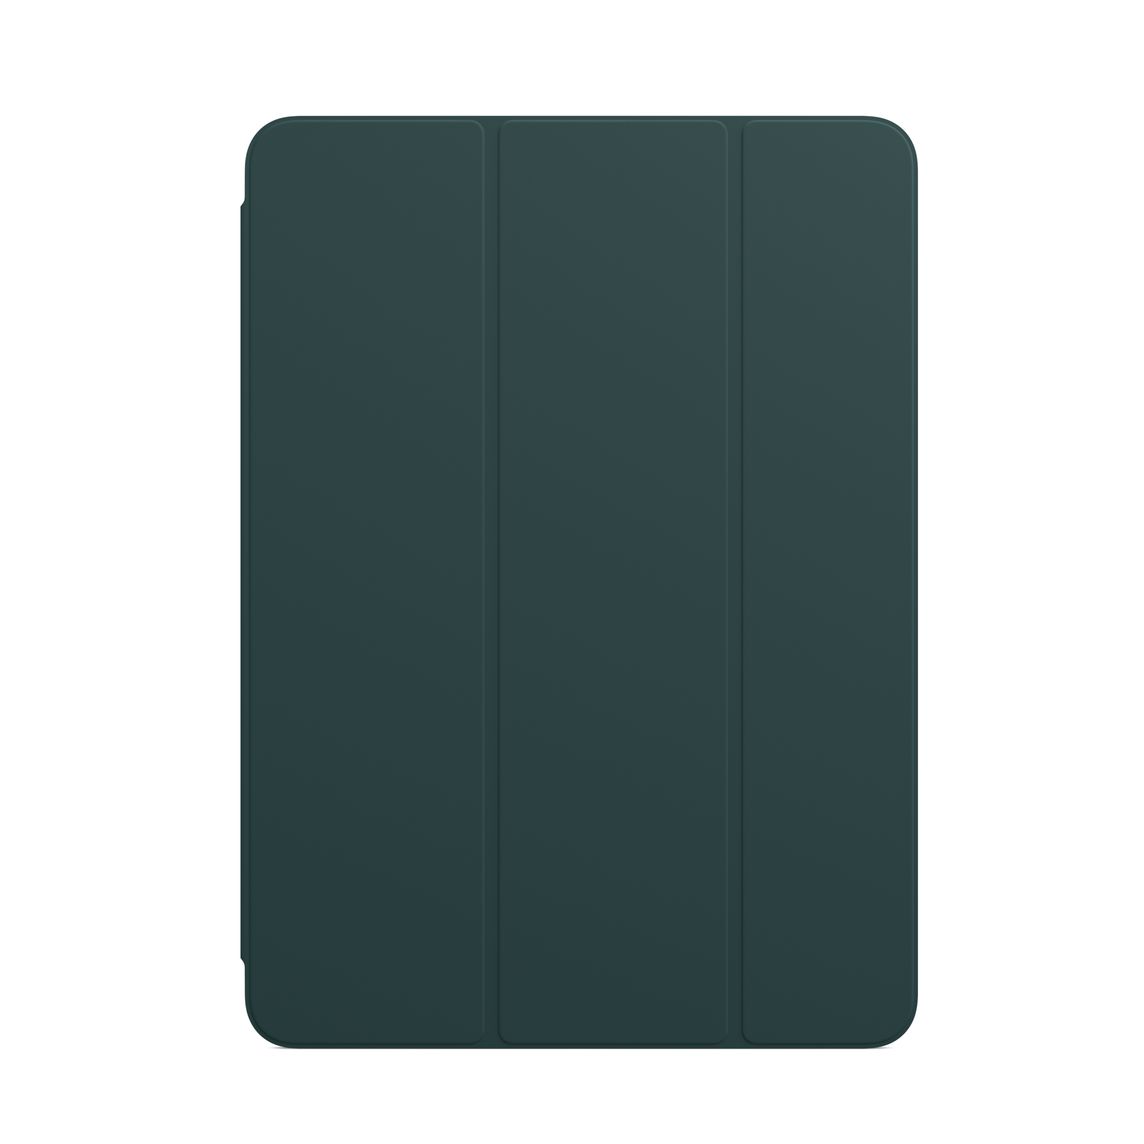 Фото — Чехол Apple Smart Folio для iPad Air (4‑го поколения), «штормовой зелёный»